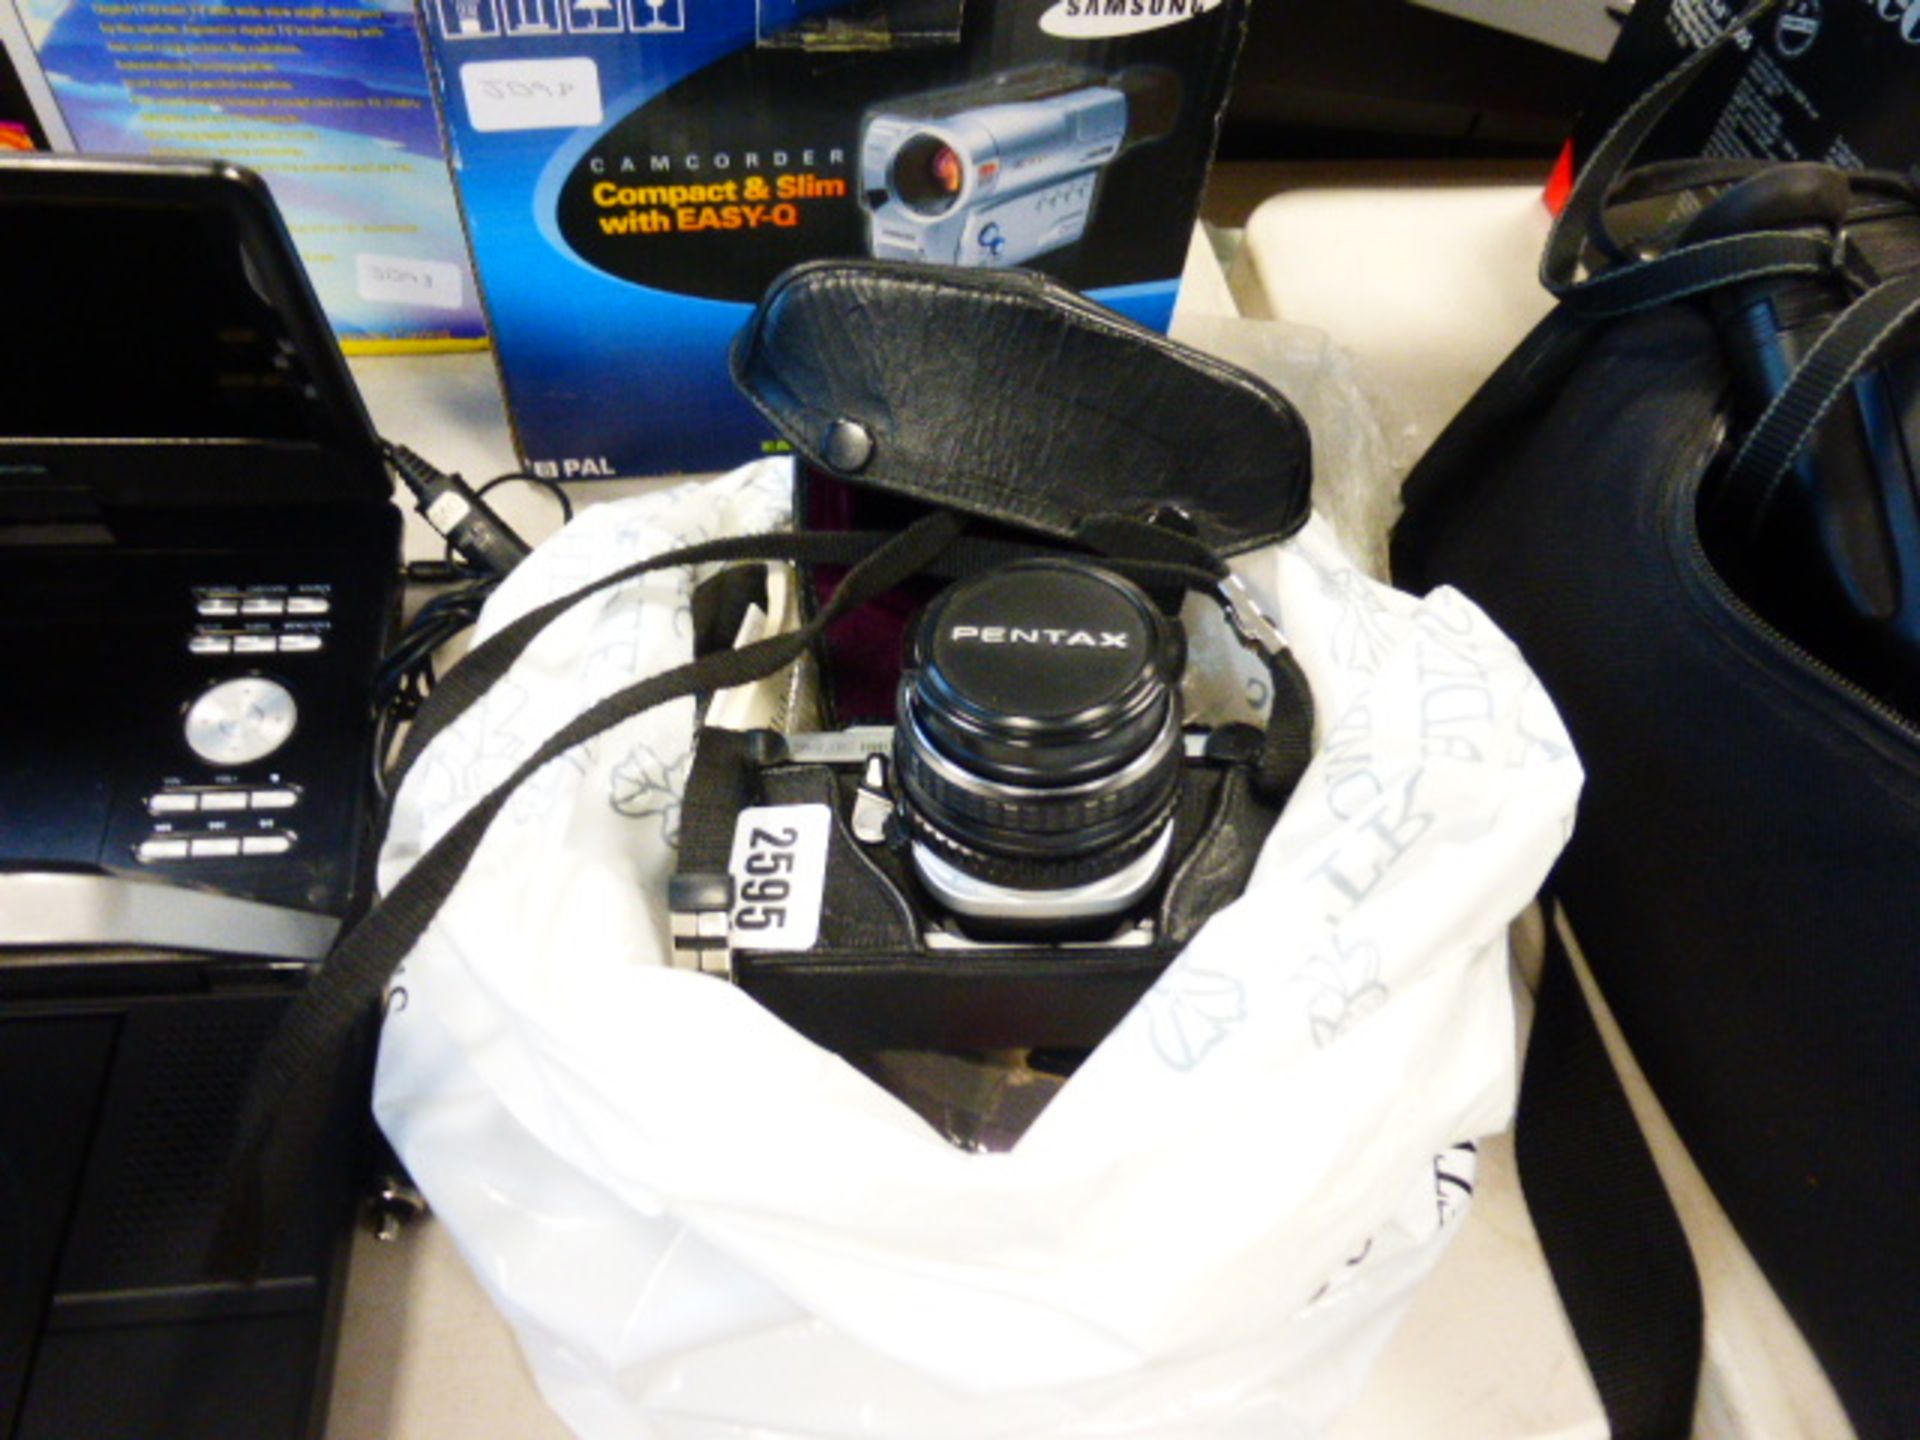 Pentax ME super film camera with accessories in bag